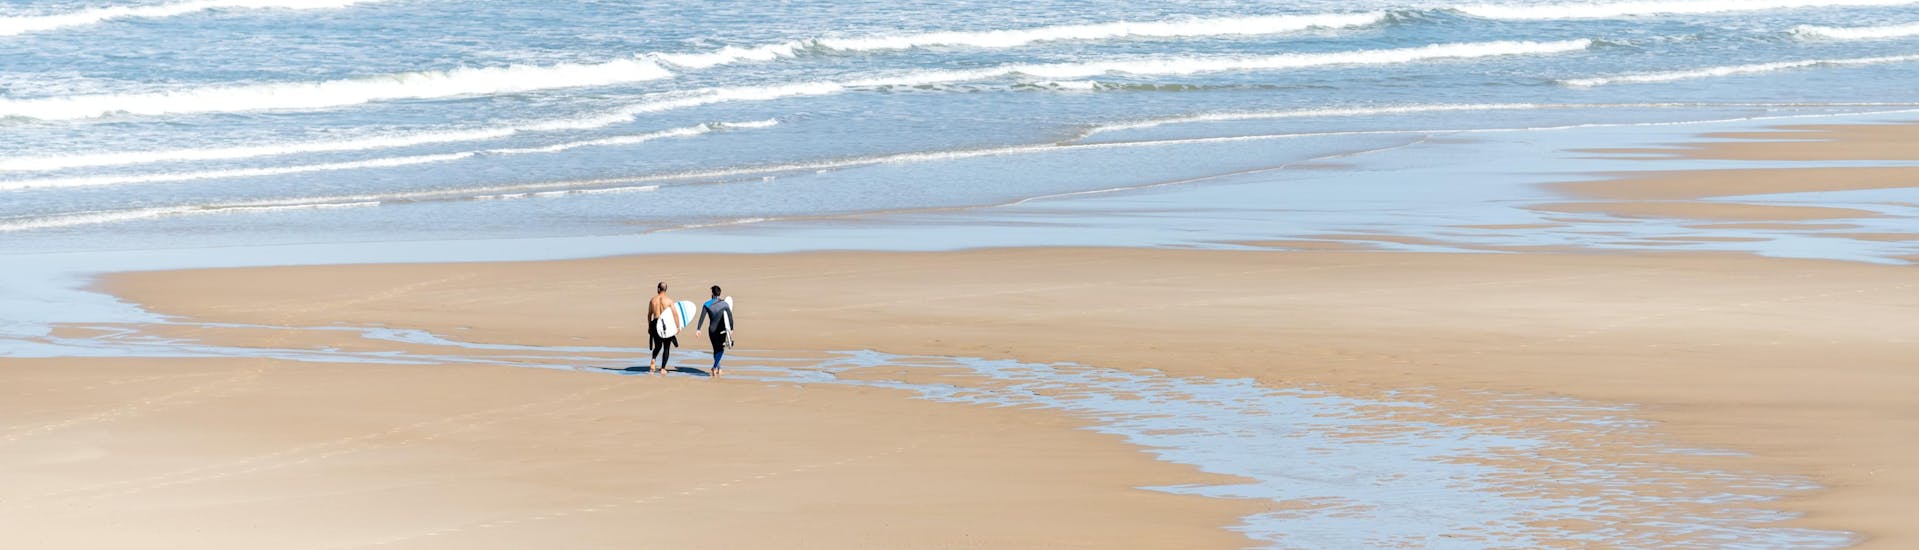 Deux hommes marchent sur la plage de Lacanau avec leur planche de surf sous le bras, où se déroulent de nombreux cours de surf.